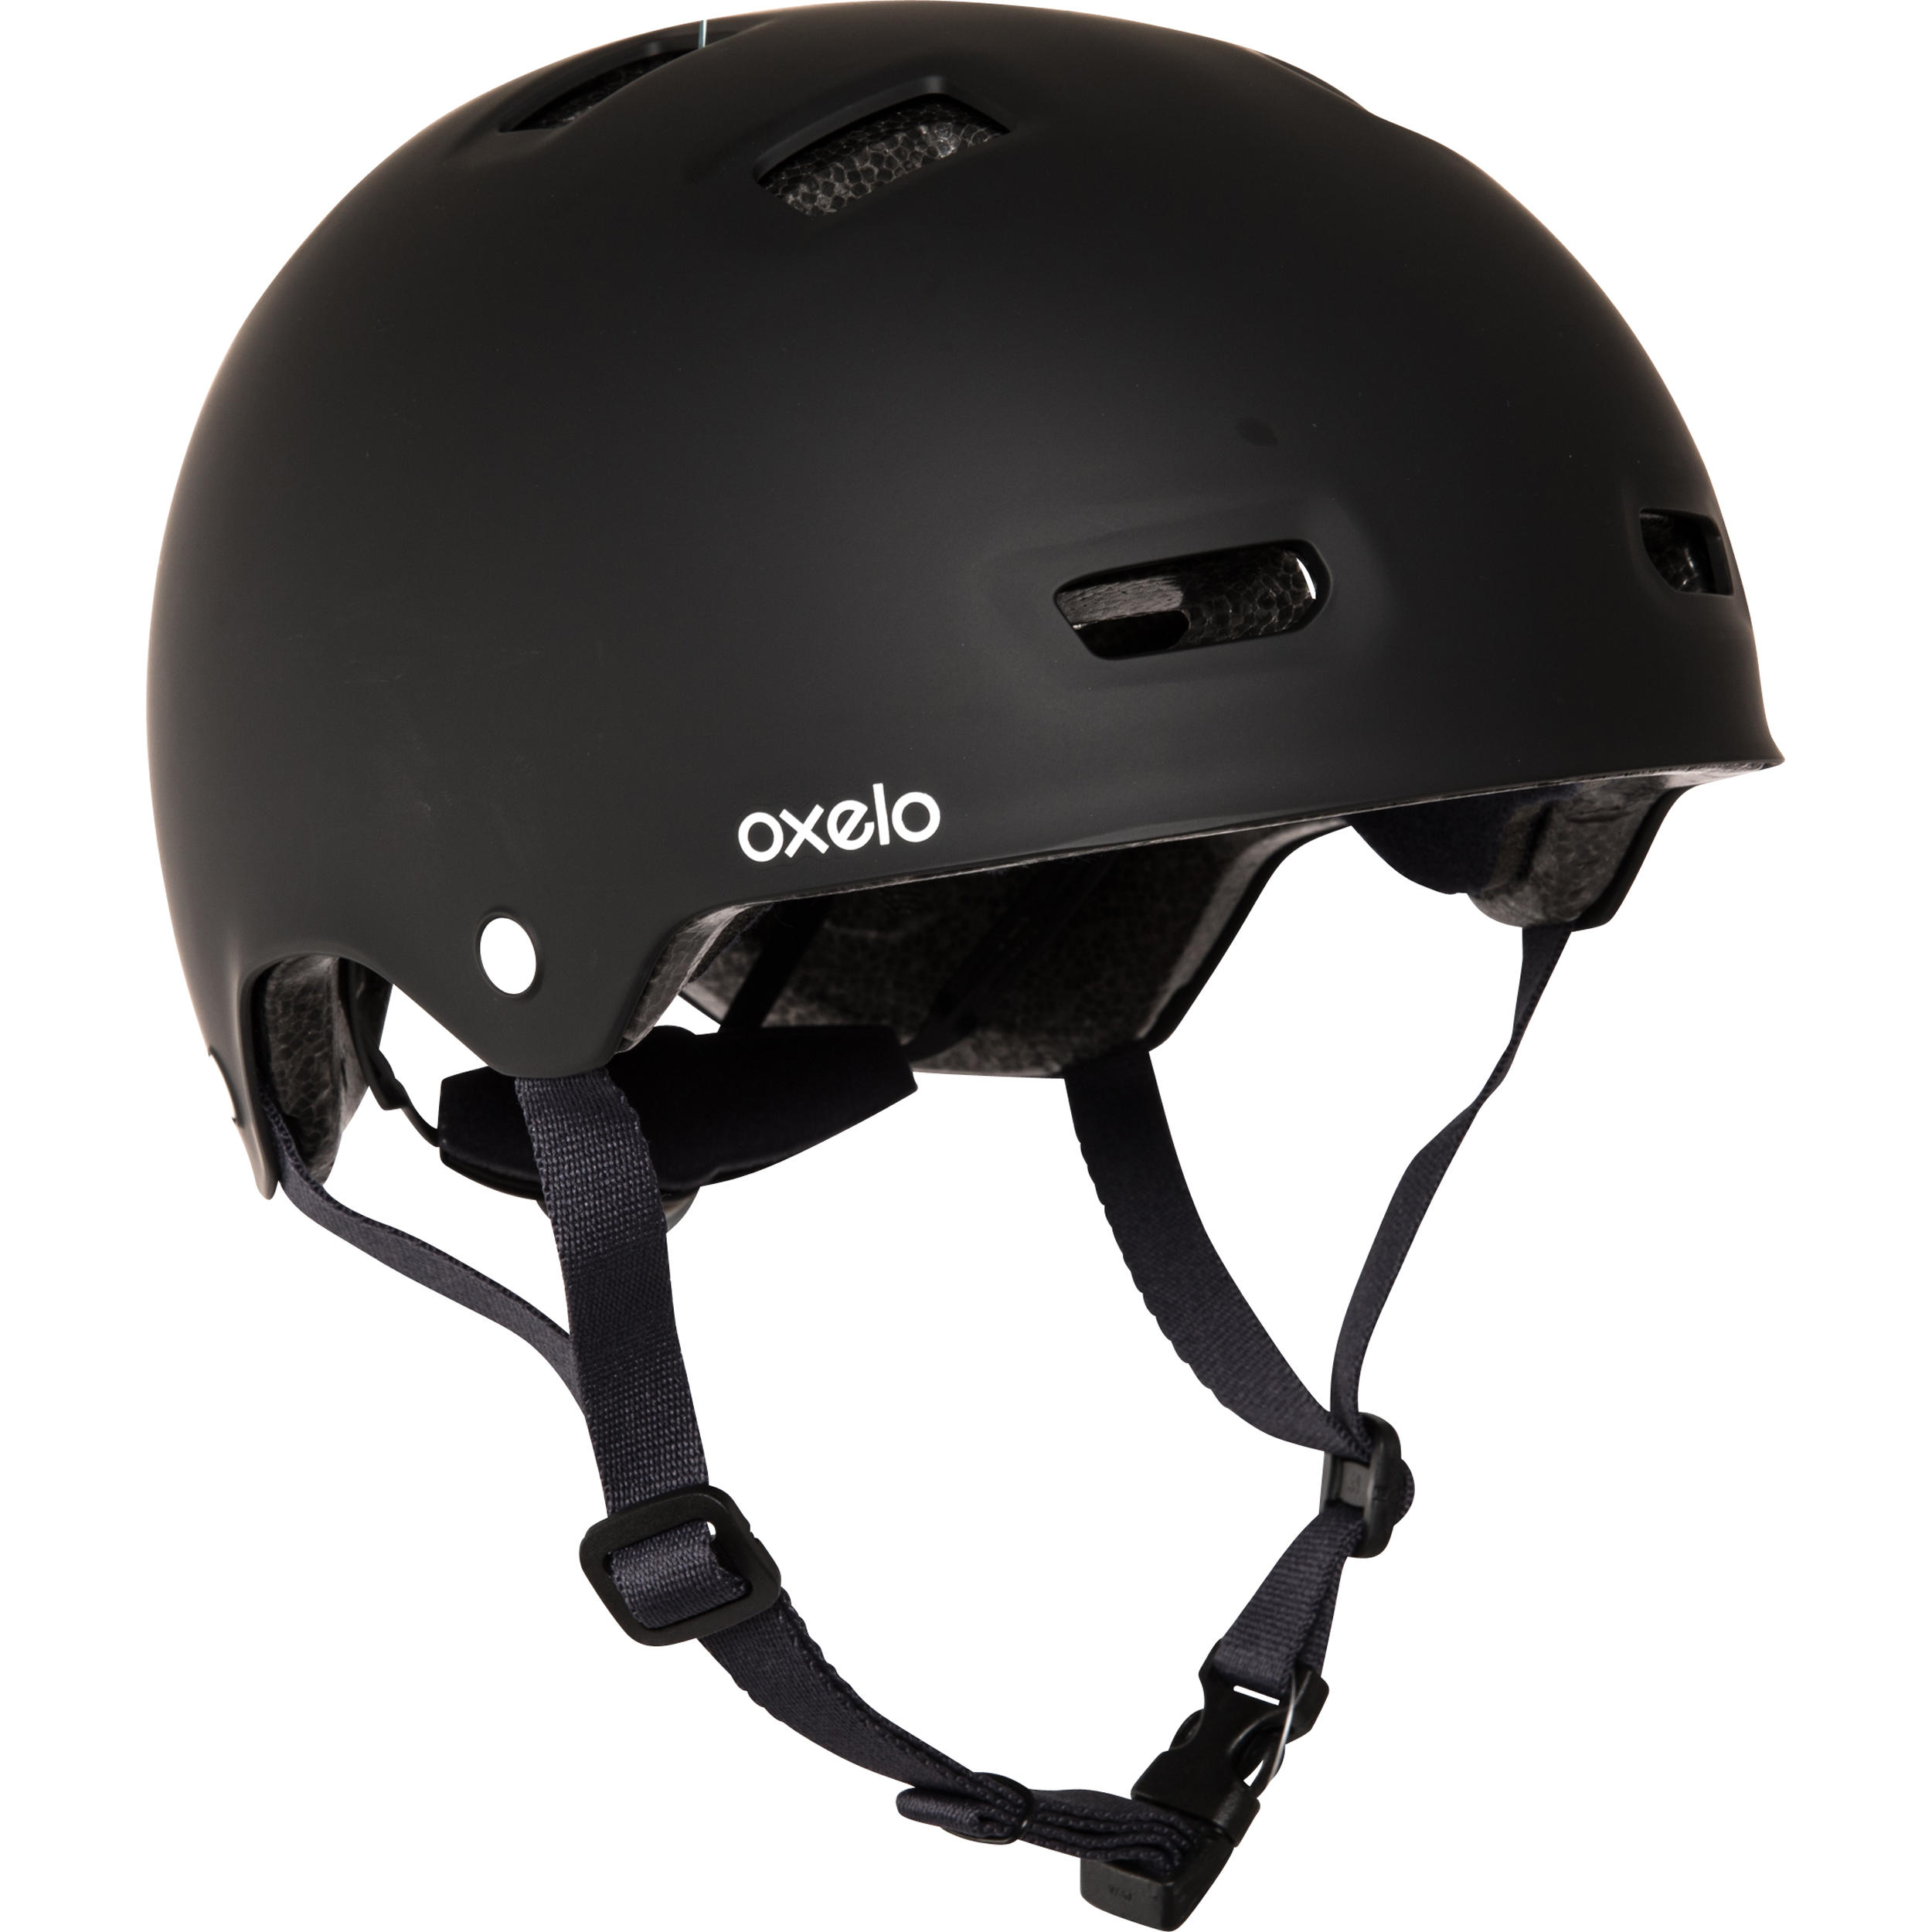 Adjustable Skate Helmet - MF 500 Black